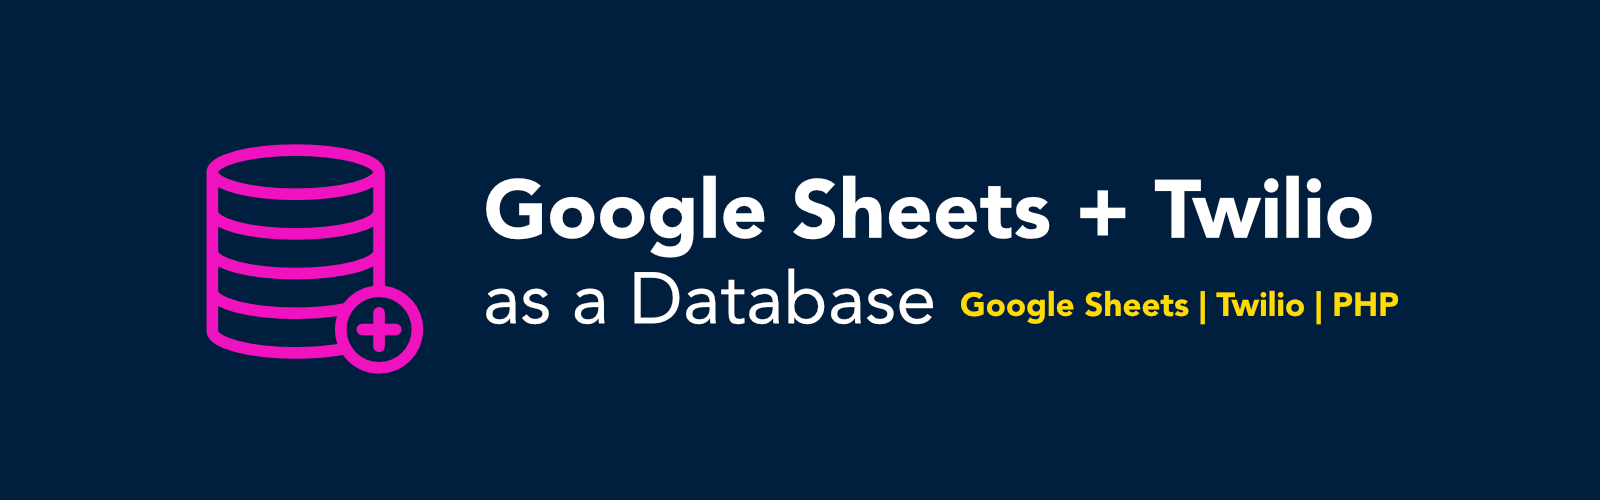 google-sheets-twilio-database.png